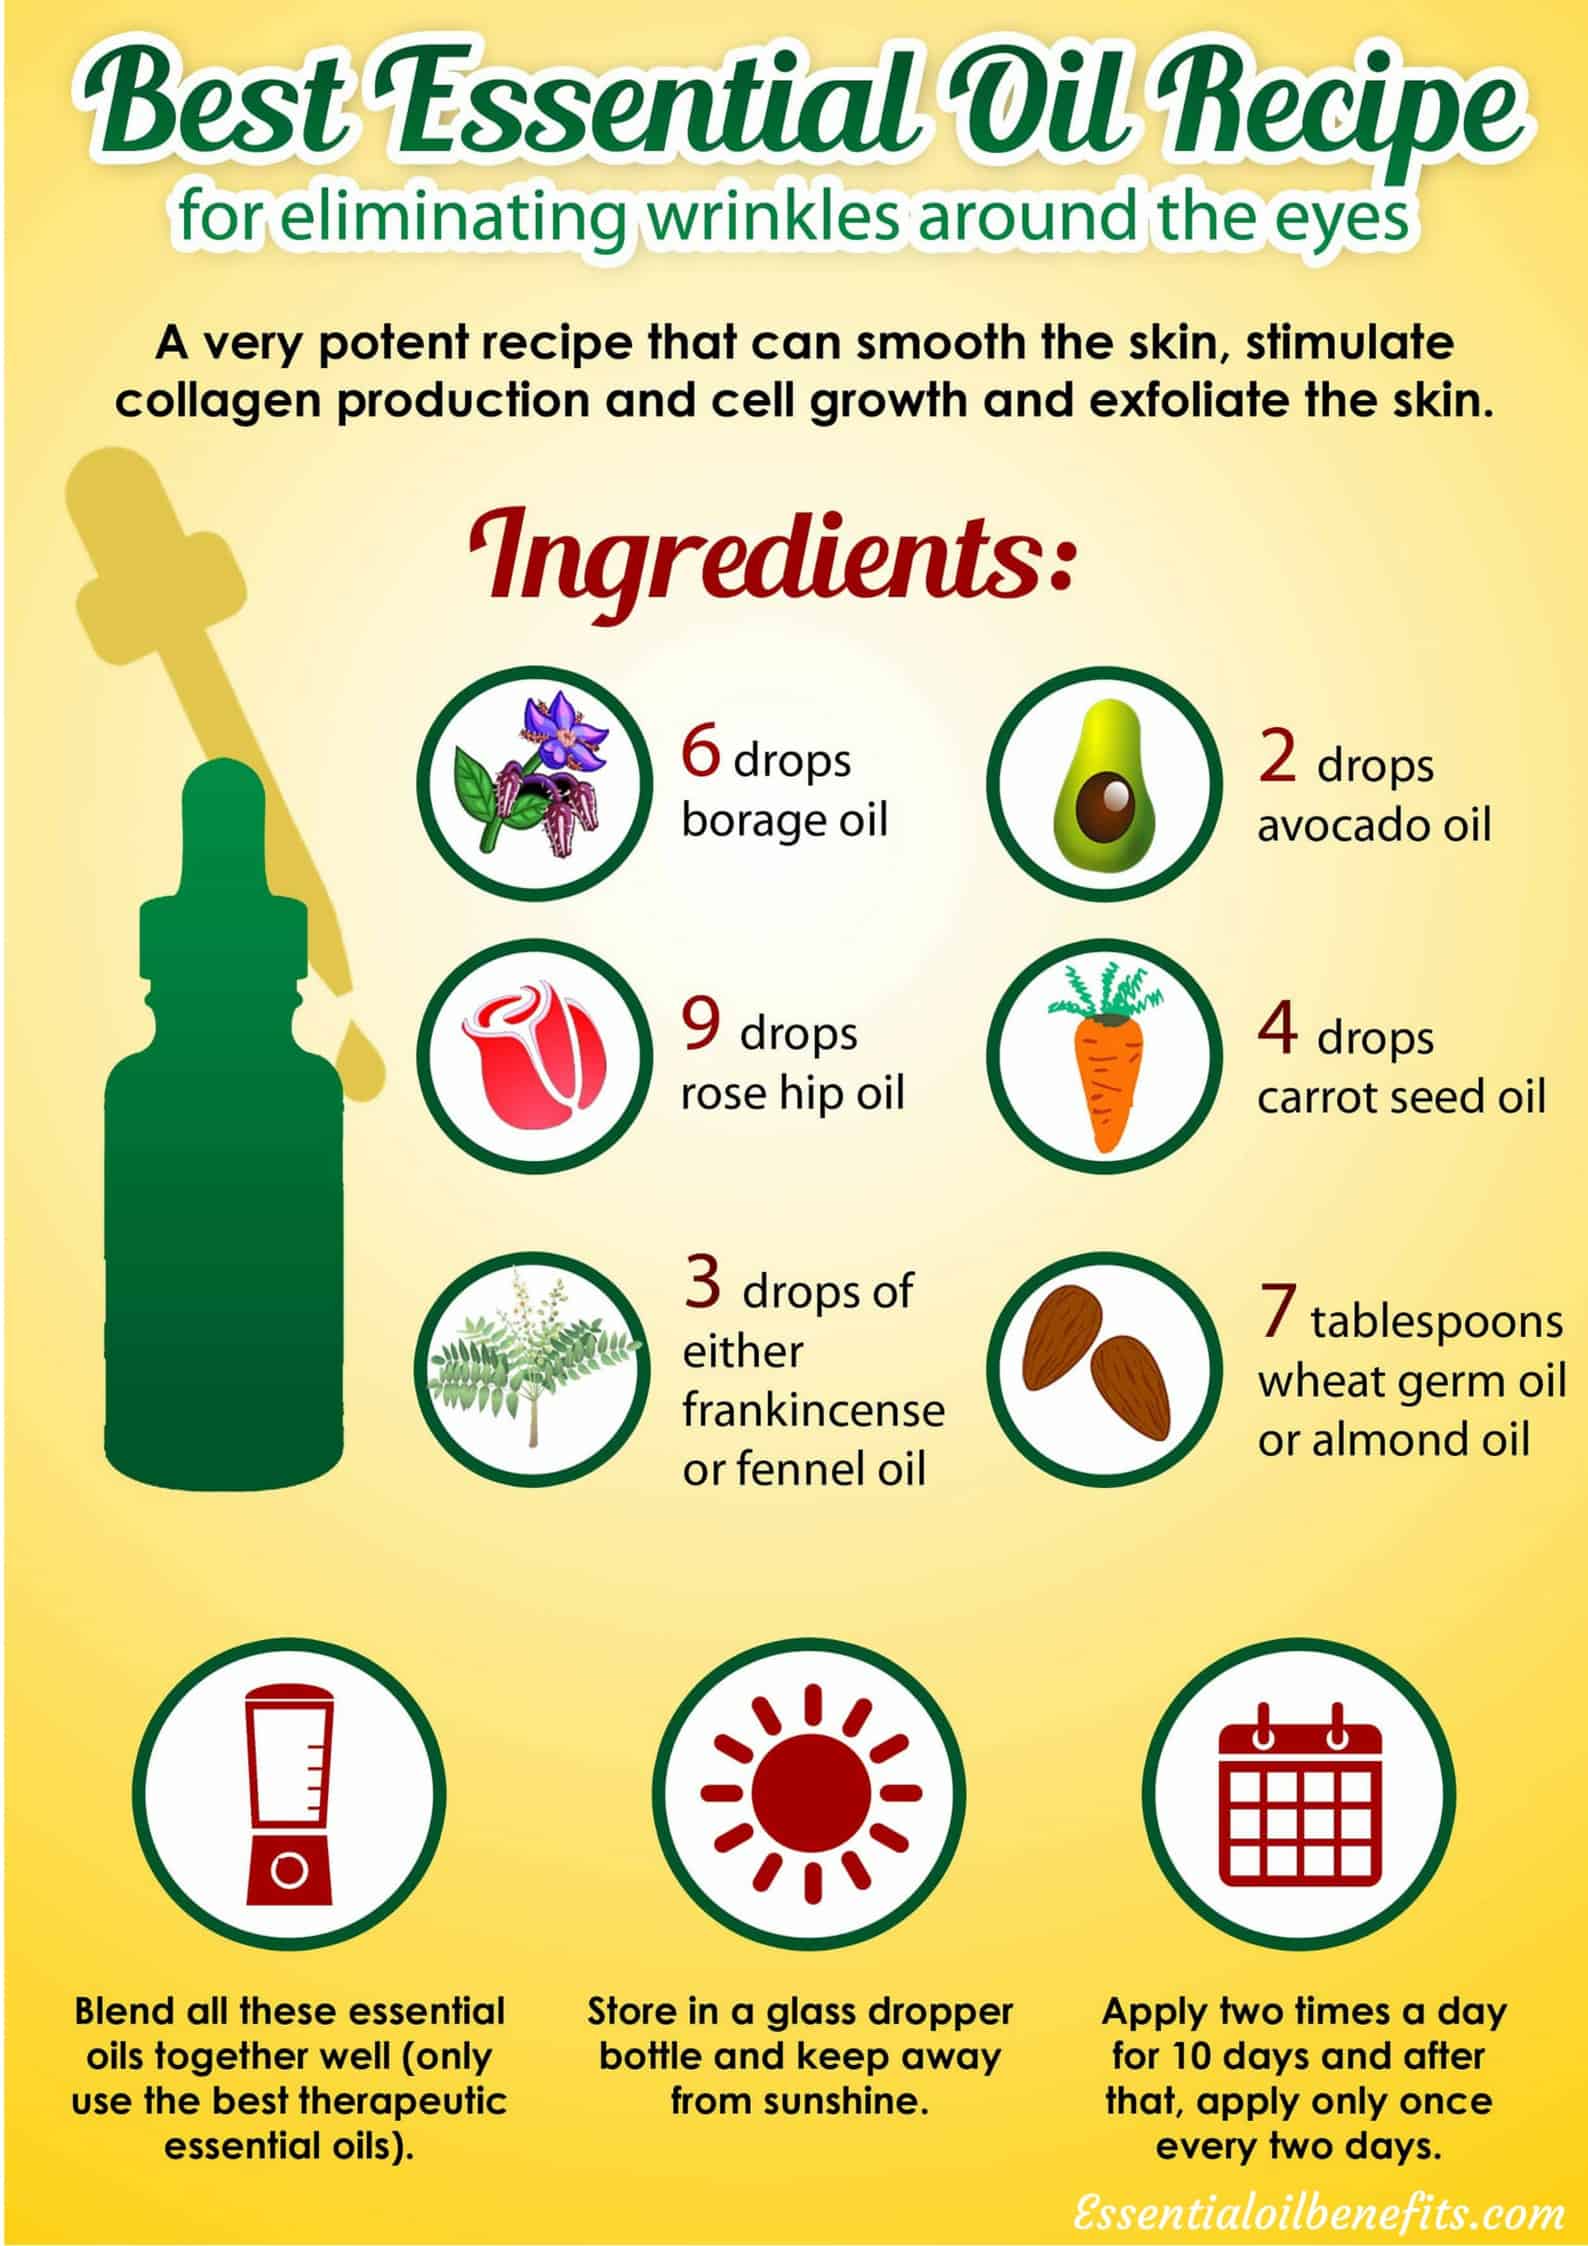 Essential oils recipes for mature skin